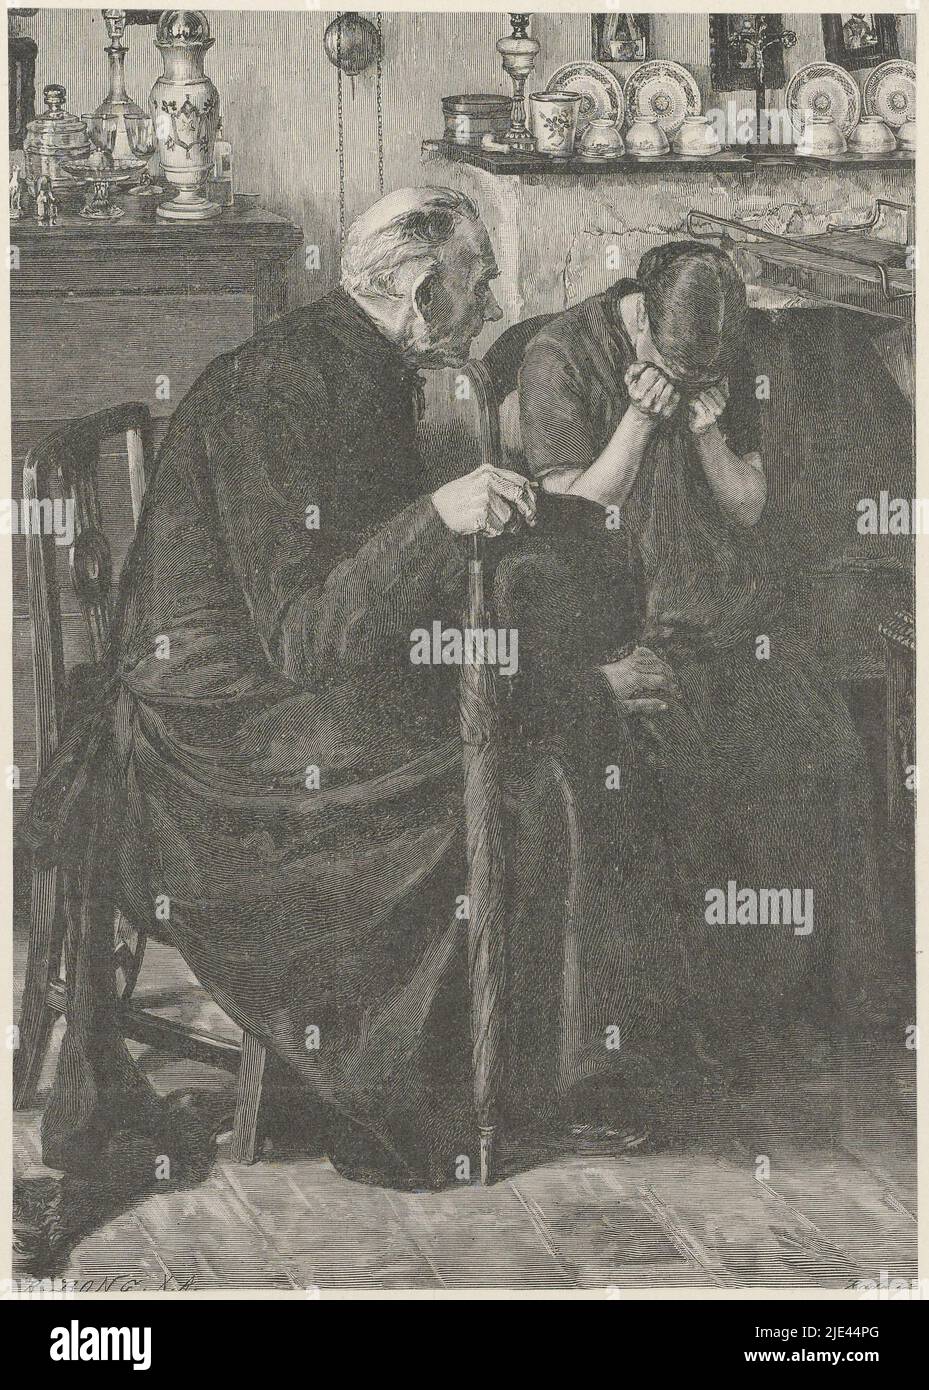 Consolateur, R. Bong, après Rddn, 1800 - 1899, Un homme avec un parapluie et une femme sont assis dans une pièce avec une cheminée, la porcelaine fine sur le manteau et une horloge suspendue sur le mur. La femme pleure avec son visage recouvert d'un tissu. L'homme place une main réconfortante sur son genou., imprimeur: R. Bong, (mentionné sur l'objet), Rddn, (mentionné sur l'objet), pays-Bas, 1800 - 1899, papier, h 269 mm - l 208 mm Banque D'Images